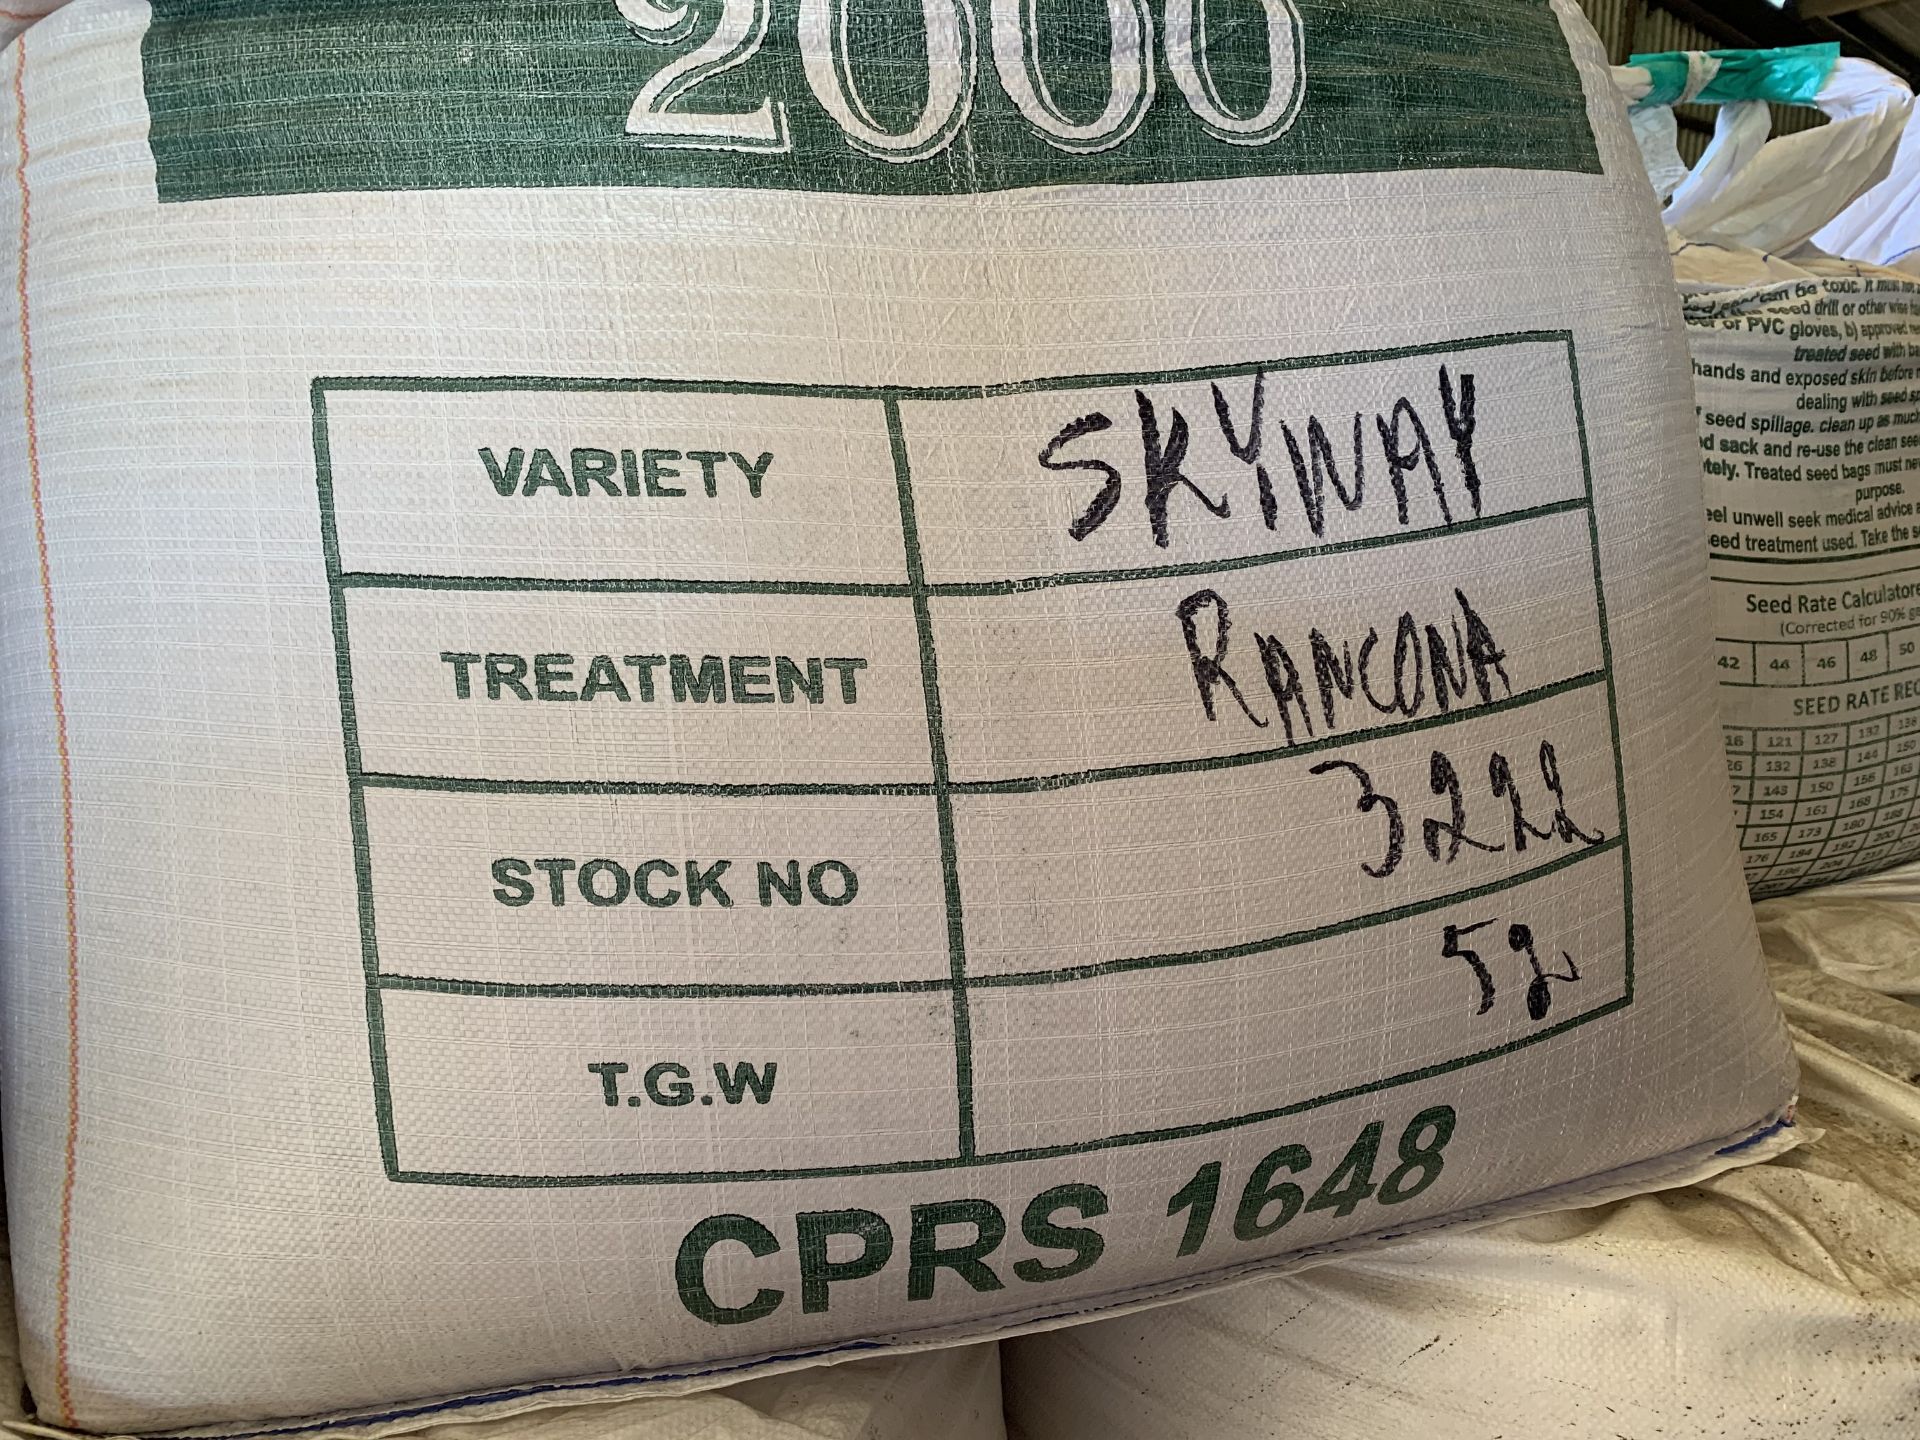 2x 500kg bags Skyway spring barley seed (0% VAT) - Image 2 of 2